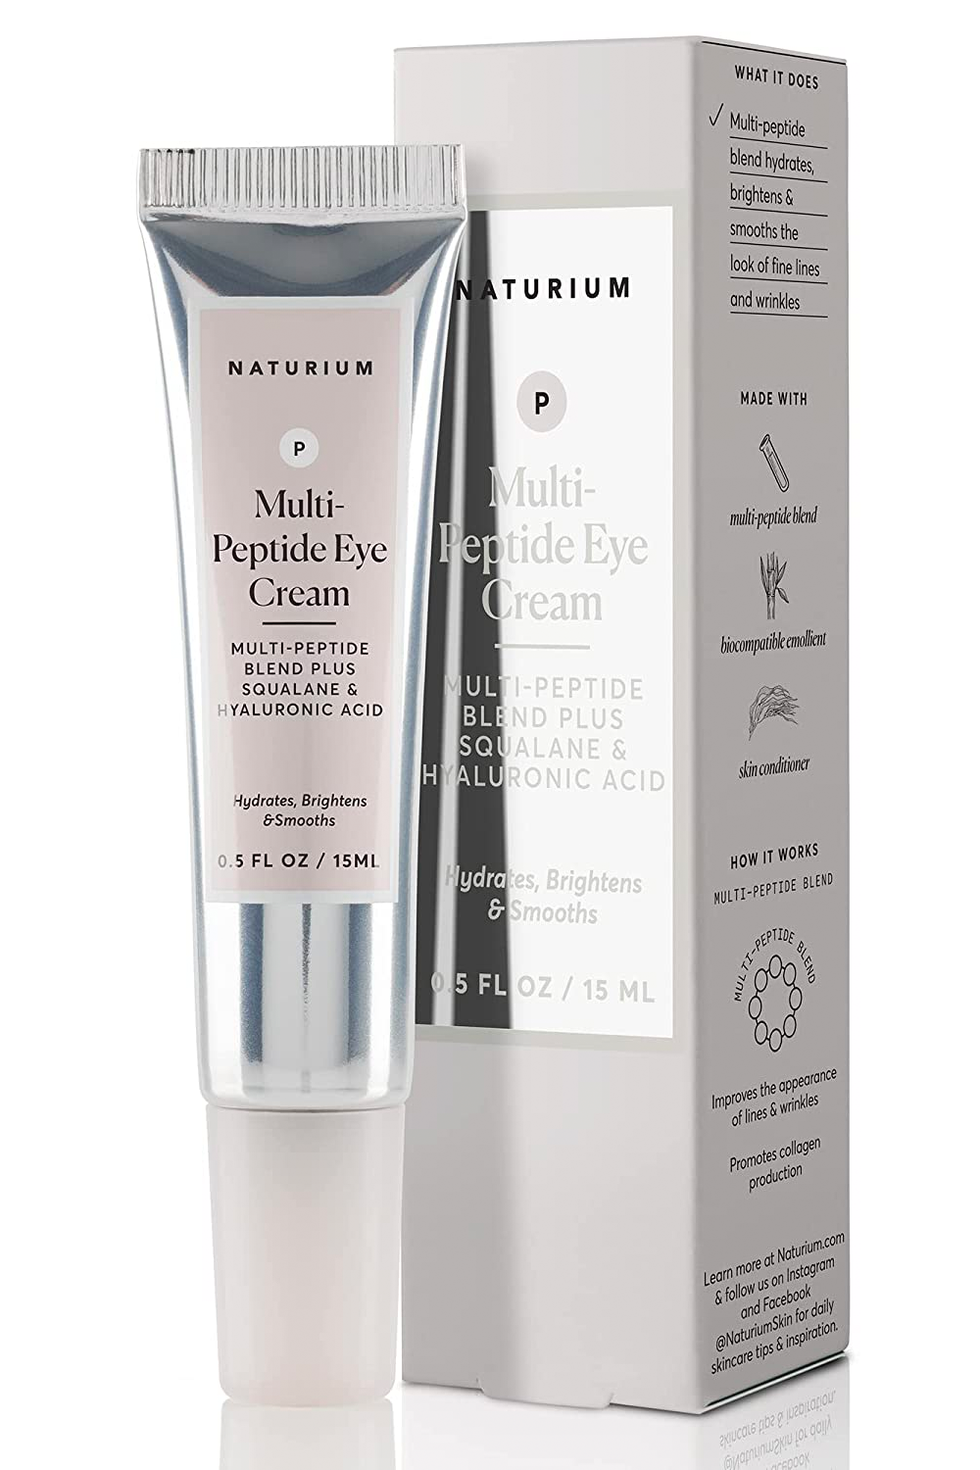 Naturium Multi-Peptide Eye Cream